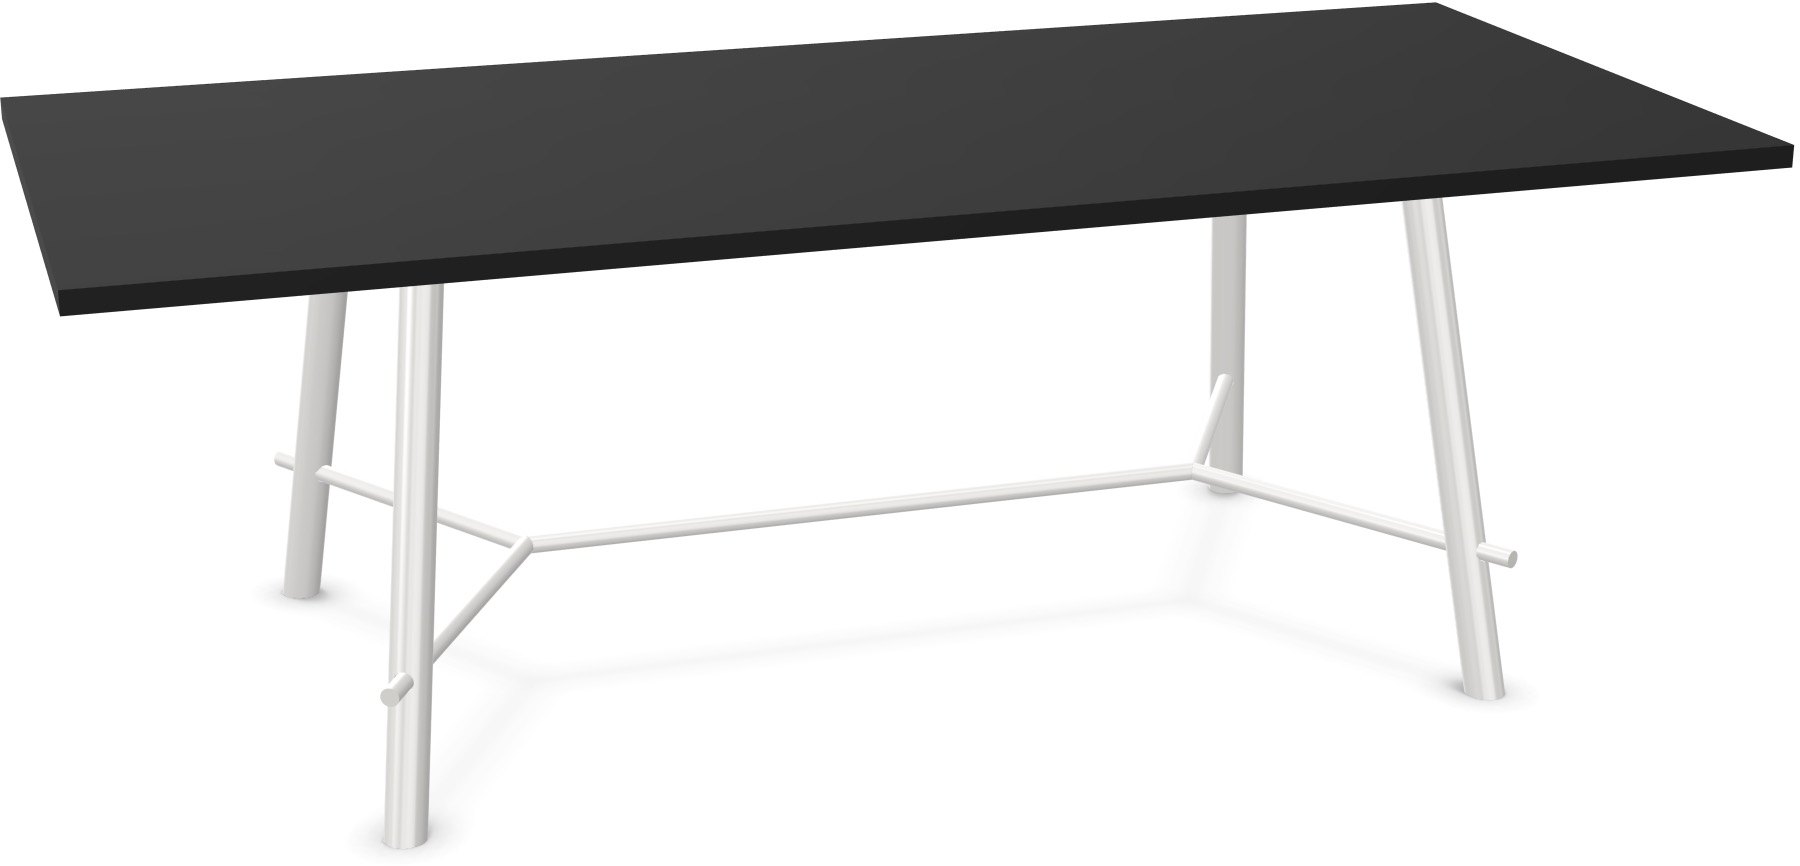 Record Living Maxi Tisch in Schwarz / Weiss präsentiert im Onlineshop von KAQTU Design AG. Esstisch ist von Infiniti Design